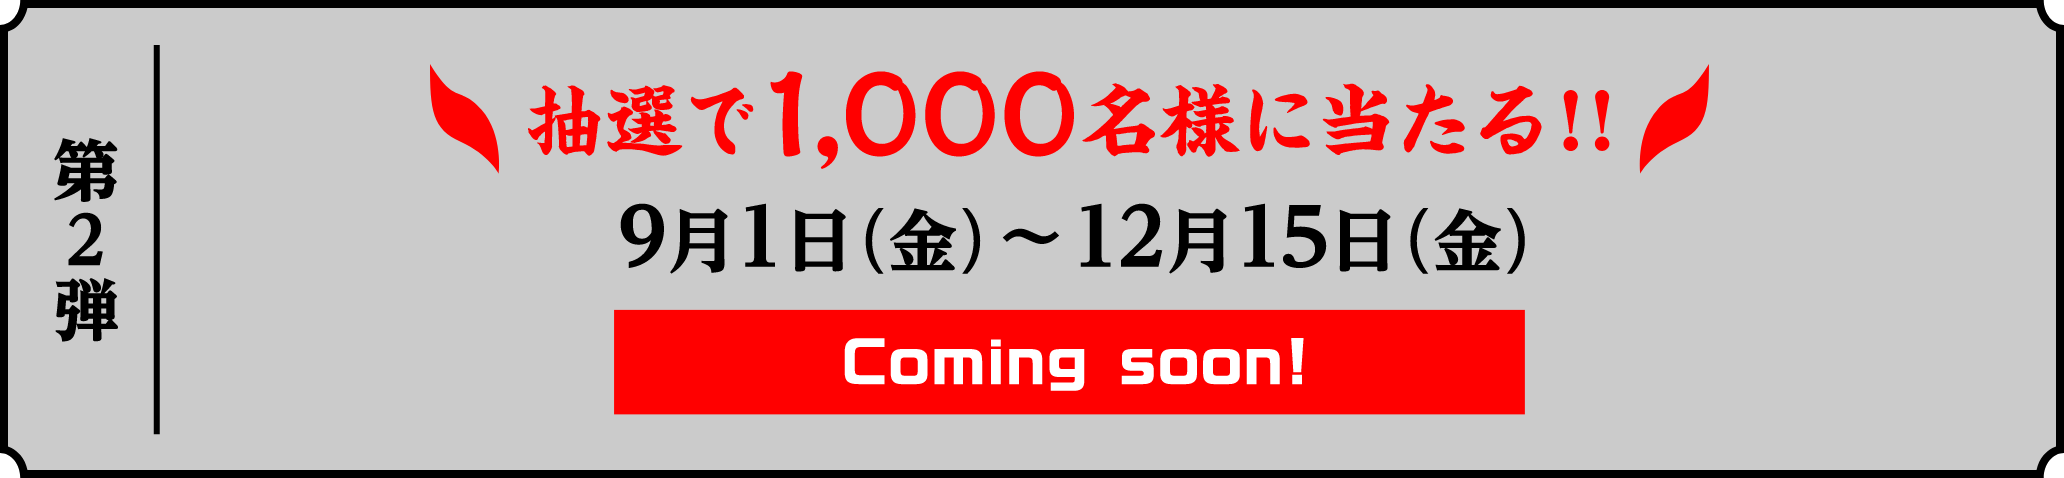 第2弾 抽選で1,000名様に当たる!! 9月1日(金)~12月15日(金) Coming soon!